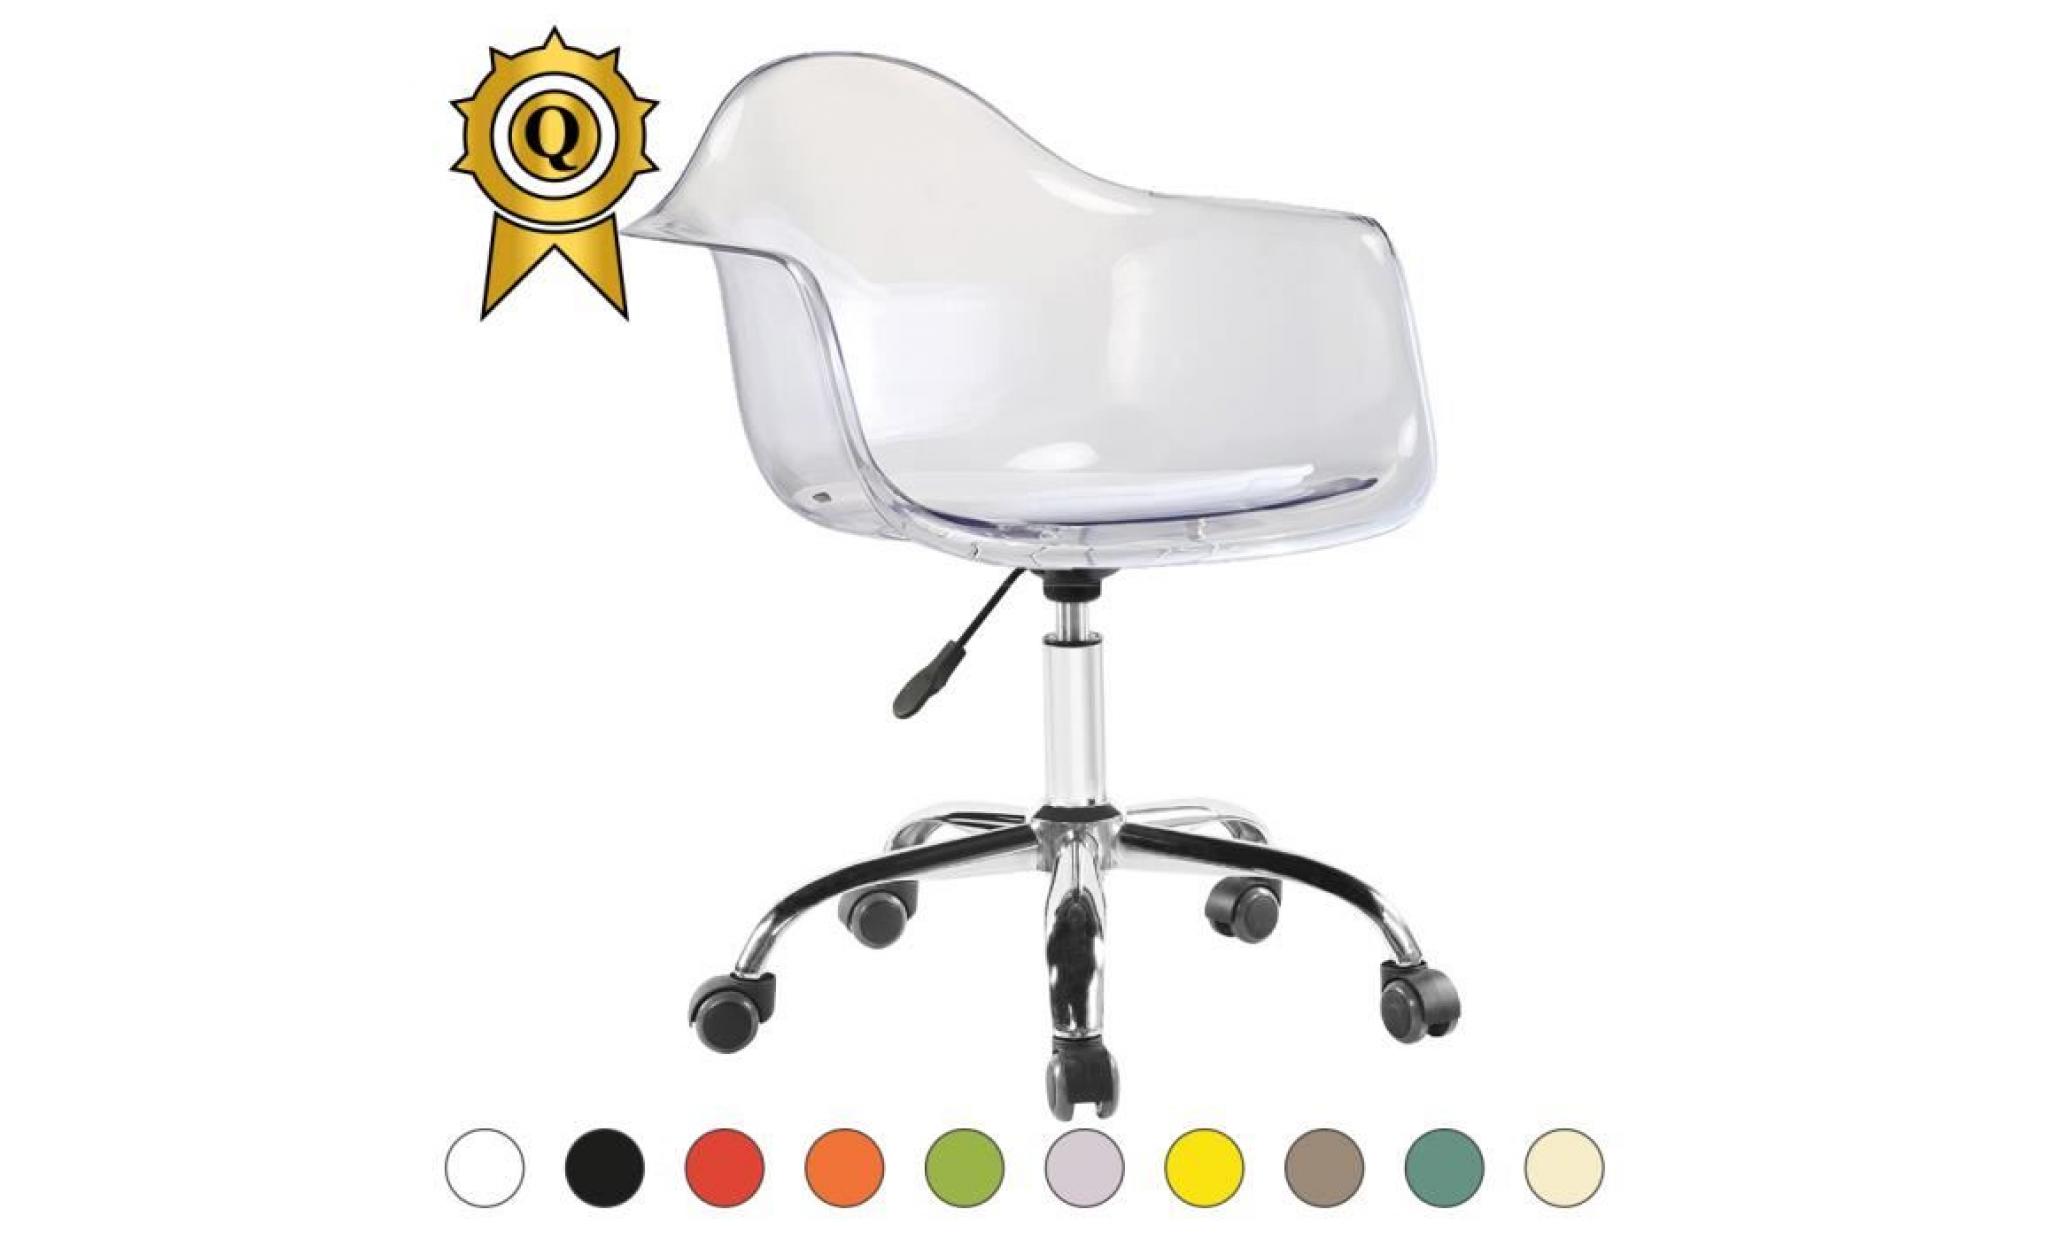 1 x fauteuil bureau style eames eiffel daw roulettes chrome pivotant assise reglable transparent gris mobistyl®